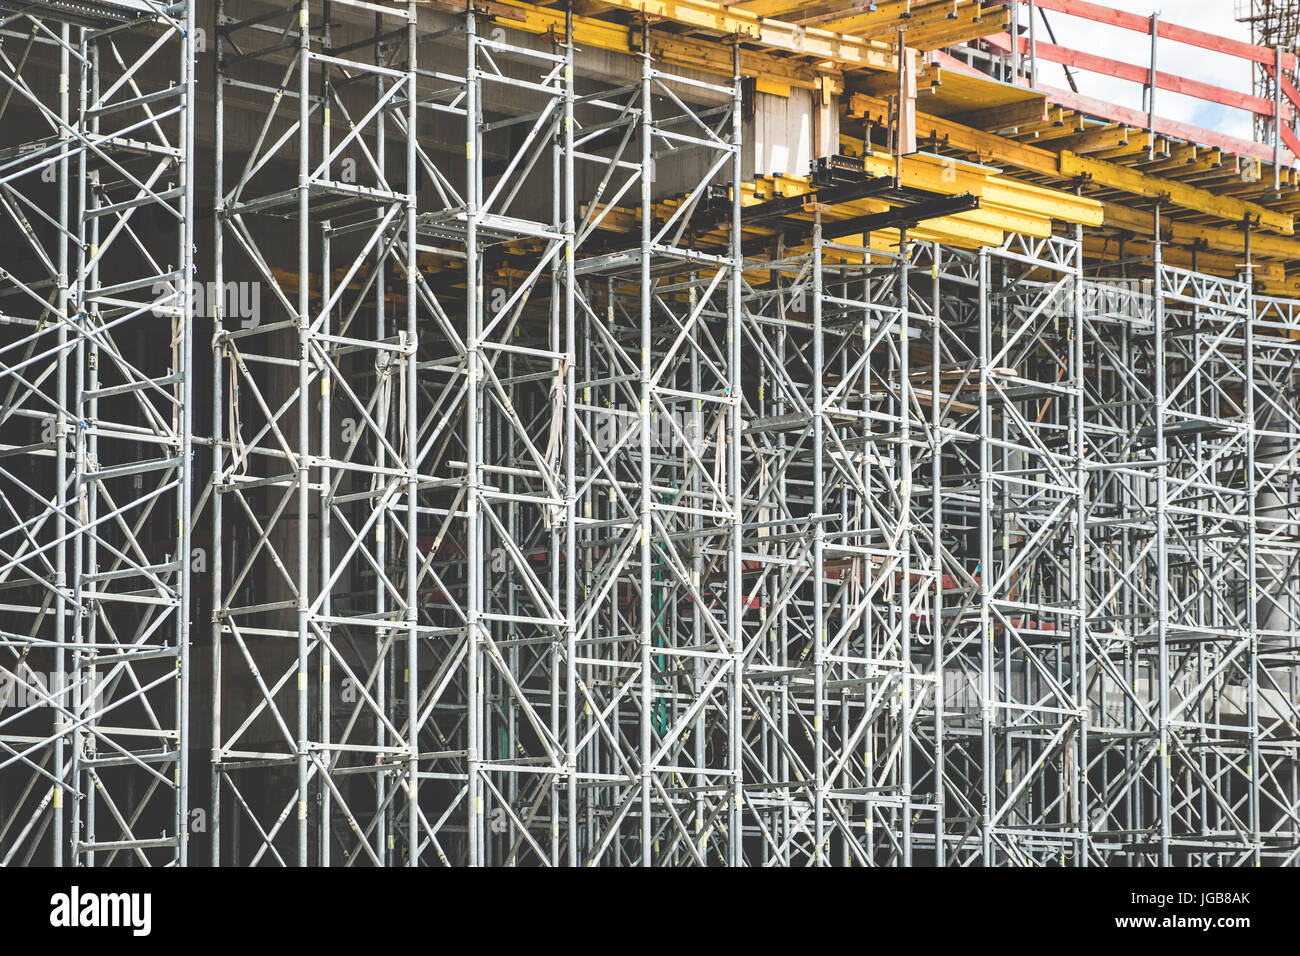 Cadre en métal / scaffolding on construction site Banque D'Images